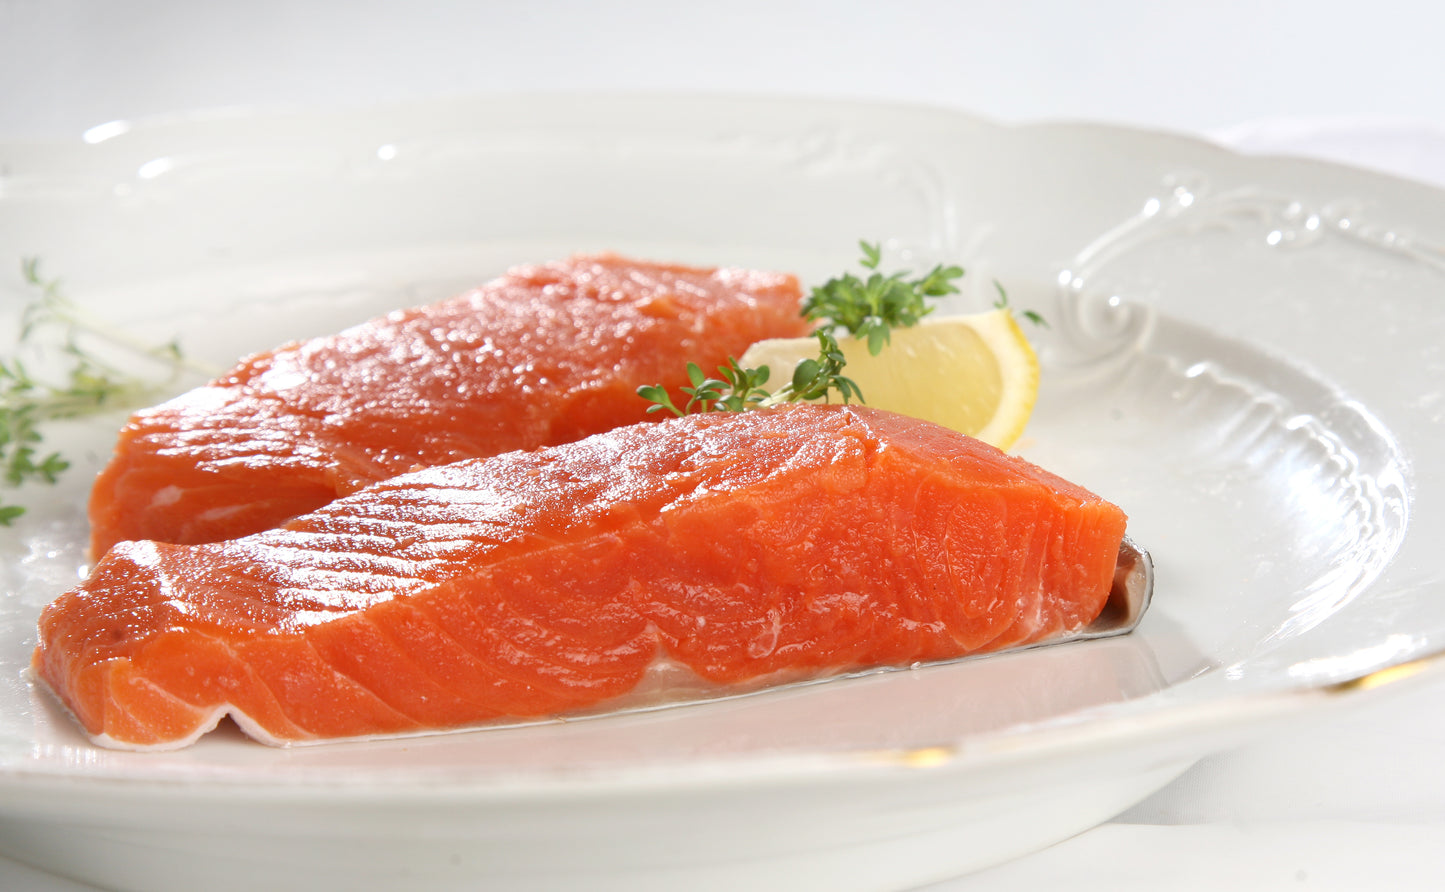 Youkon Royal Wild Salmon Filets - Top Premium Troll - Sushi - Sashimi Quality